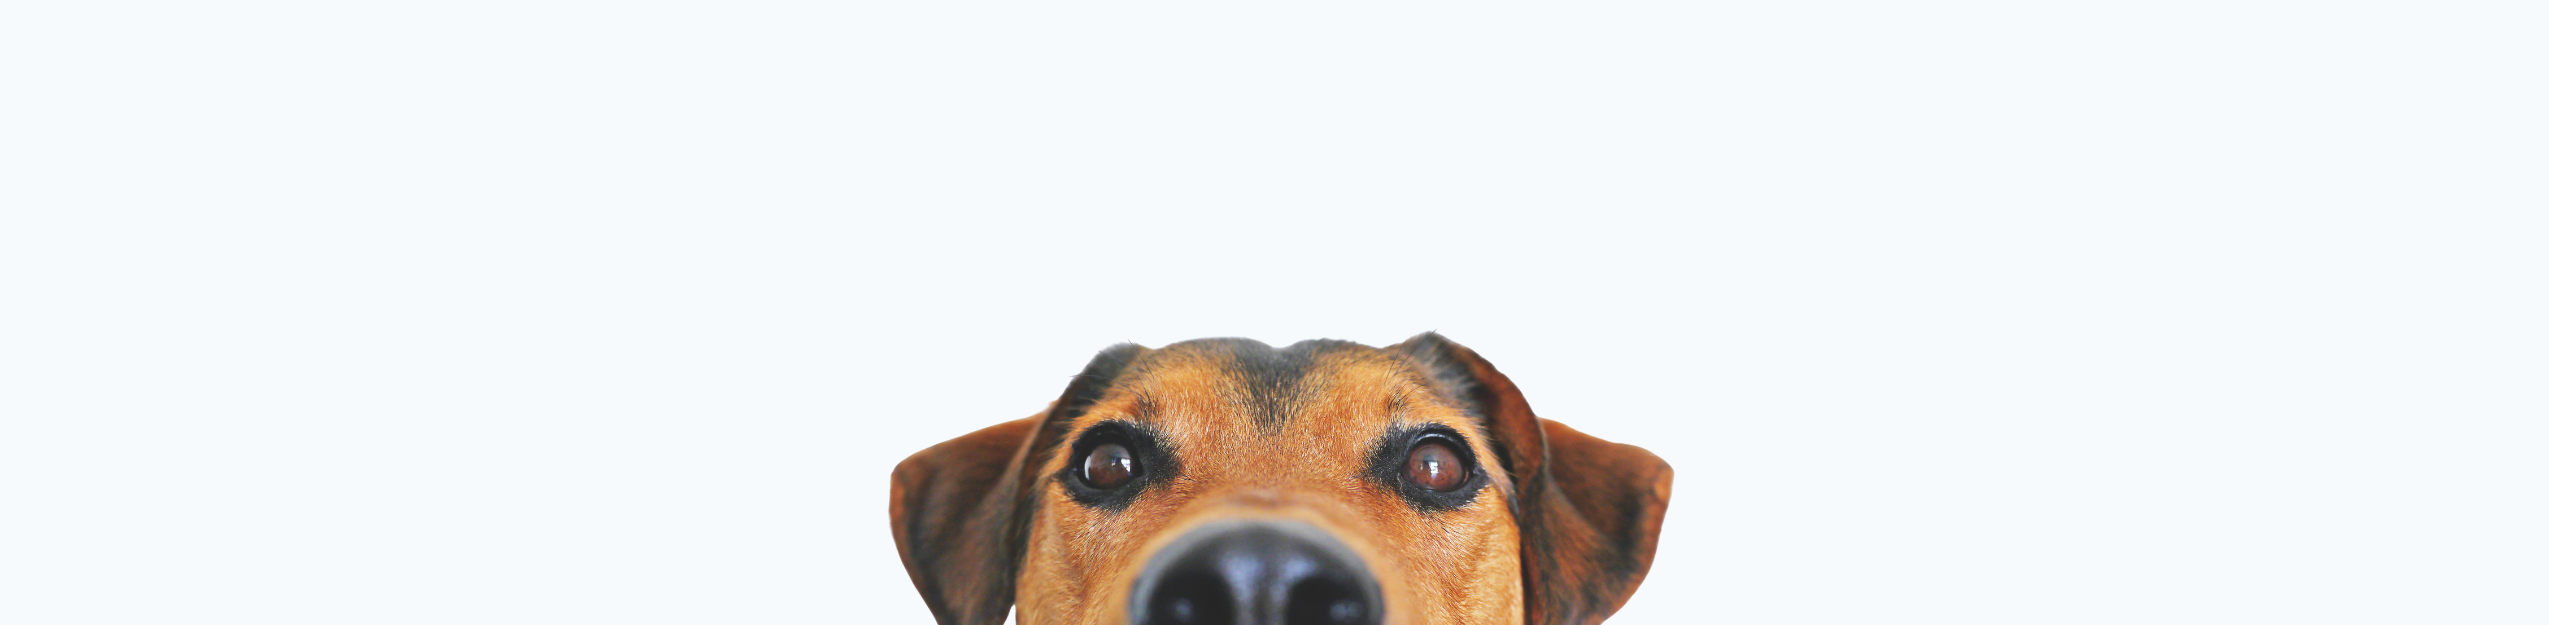 Jack Russel terrier in photography studio